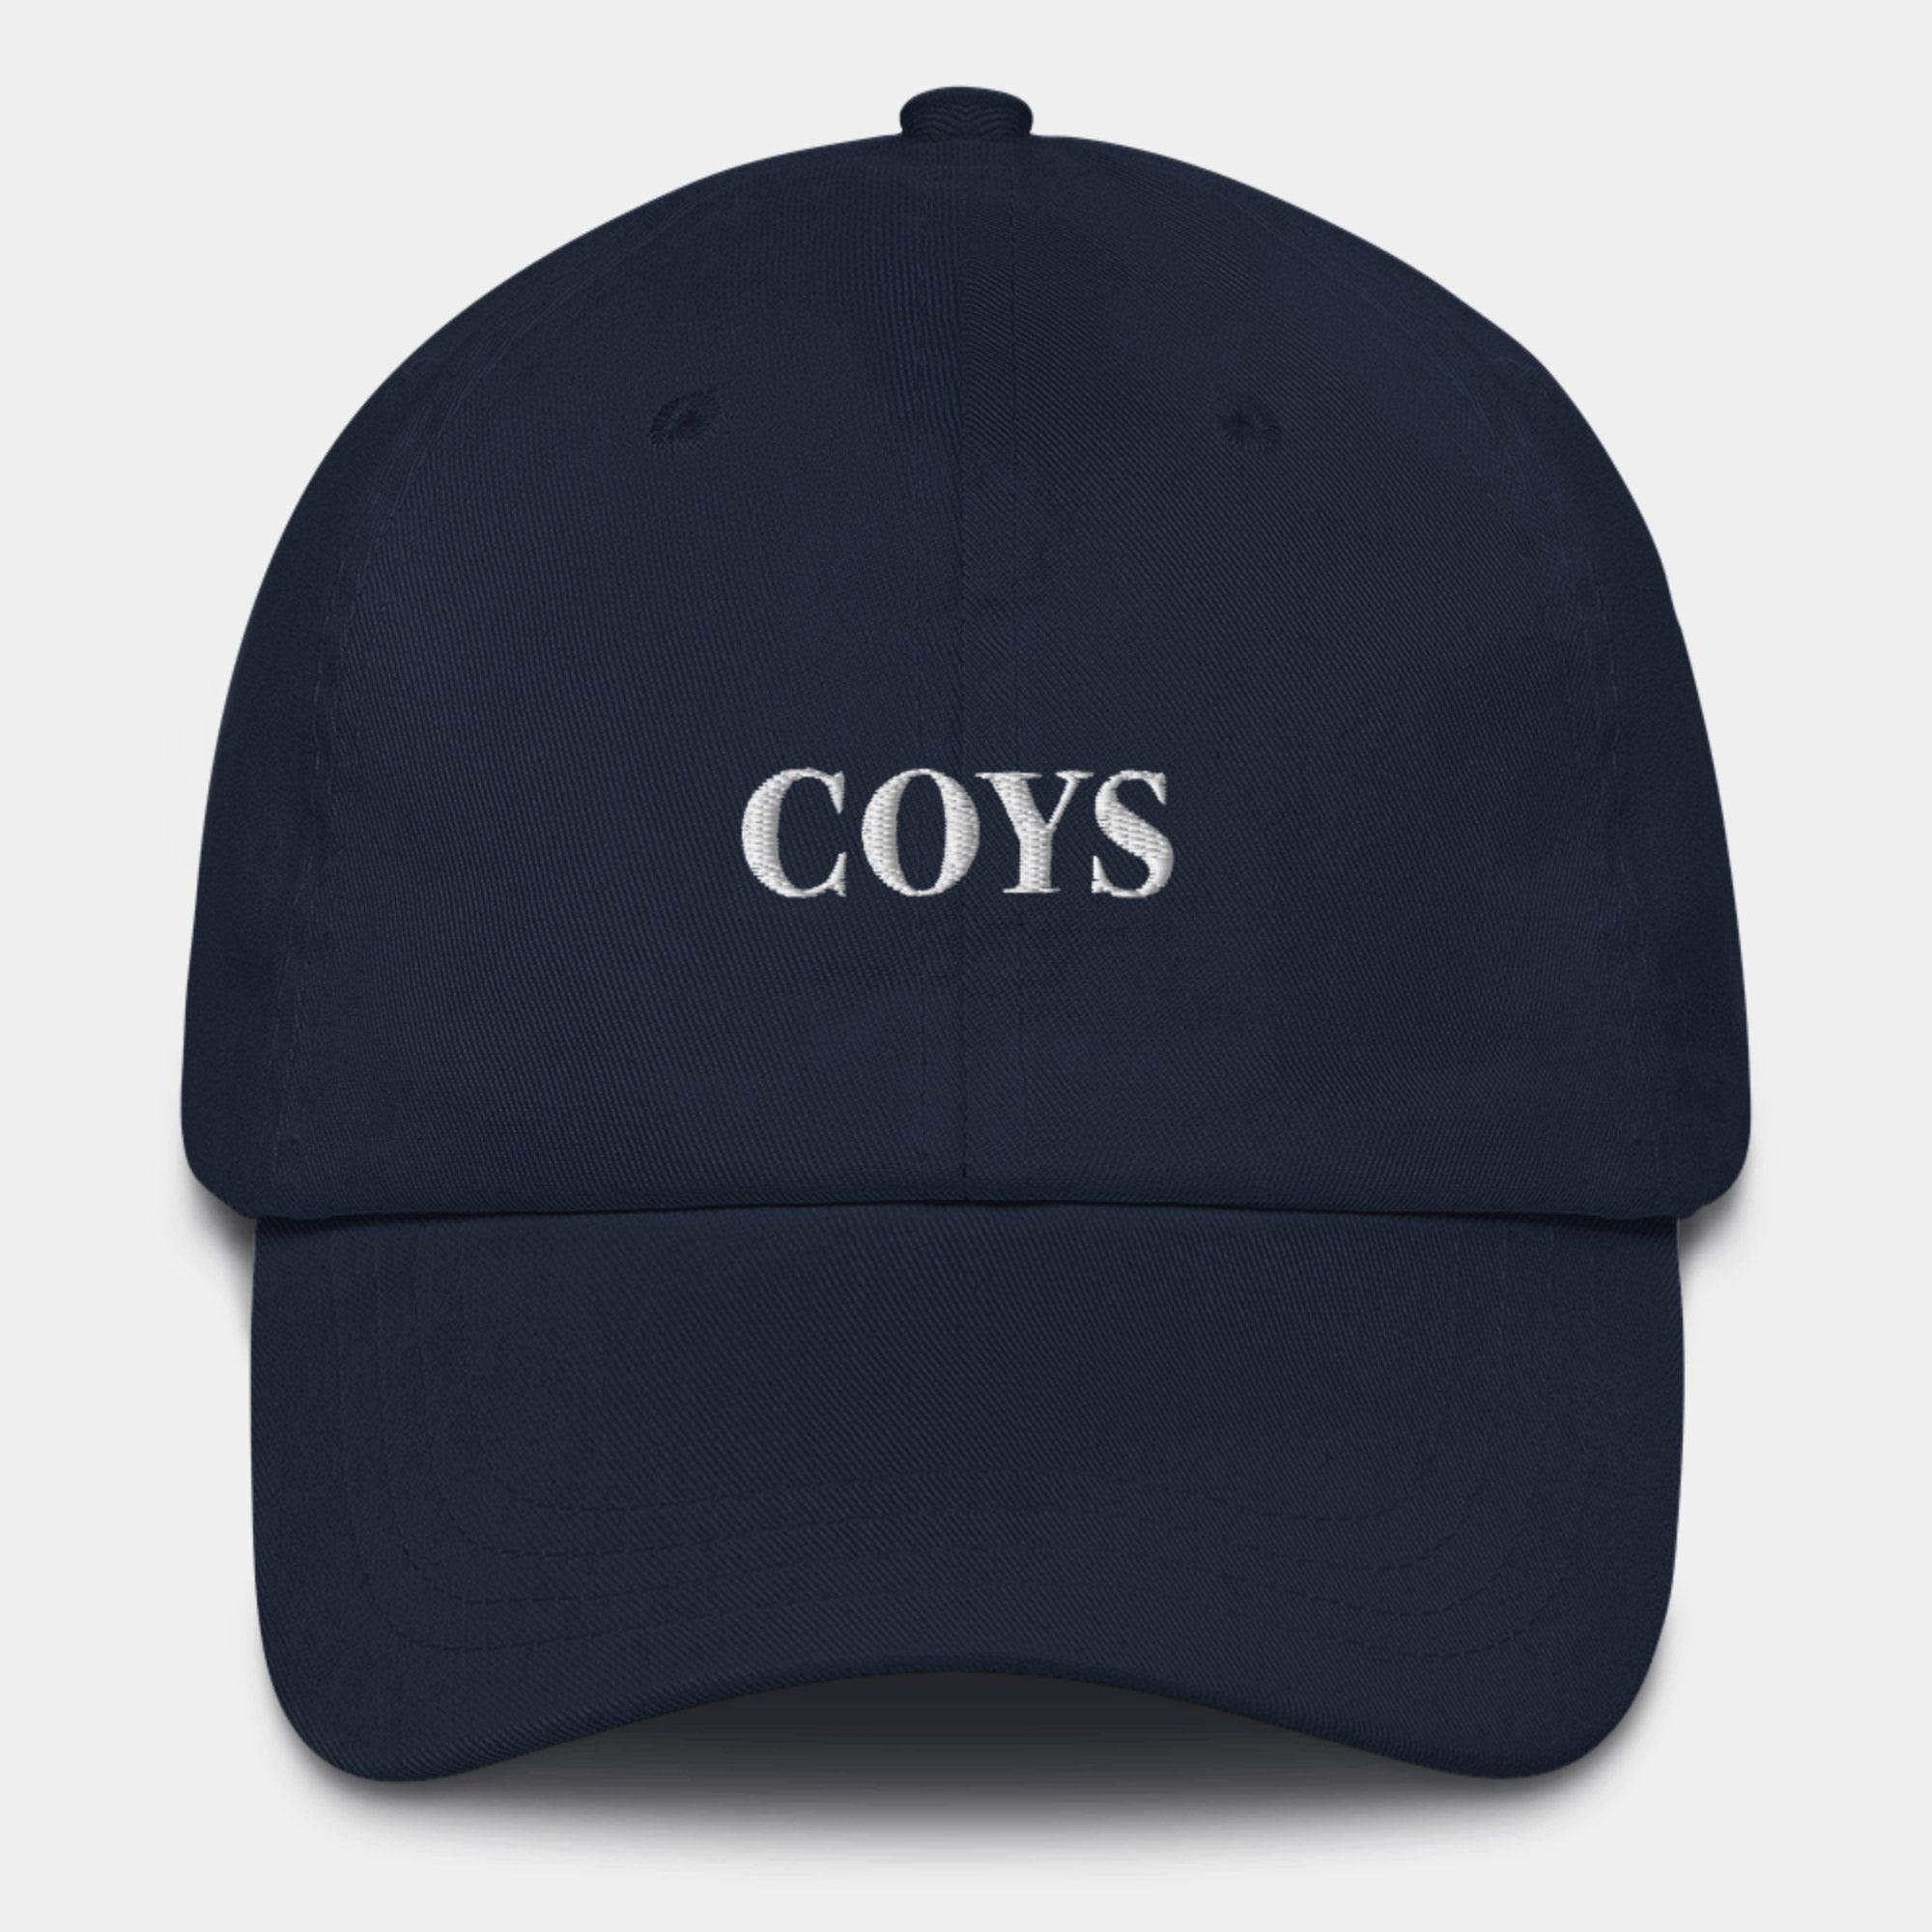 COYS (Spurs) Cap